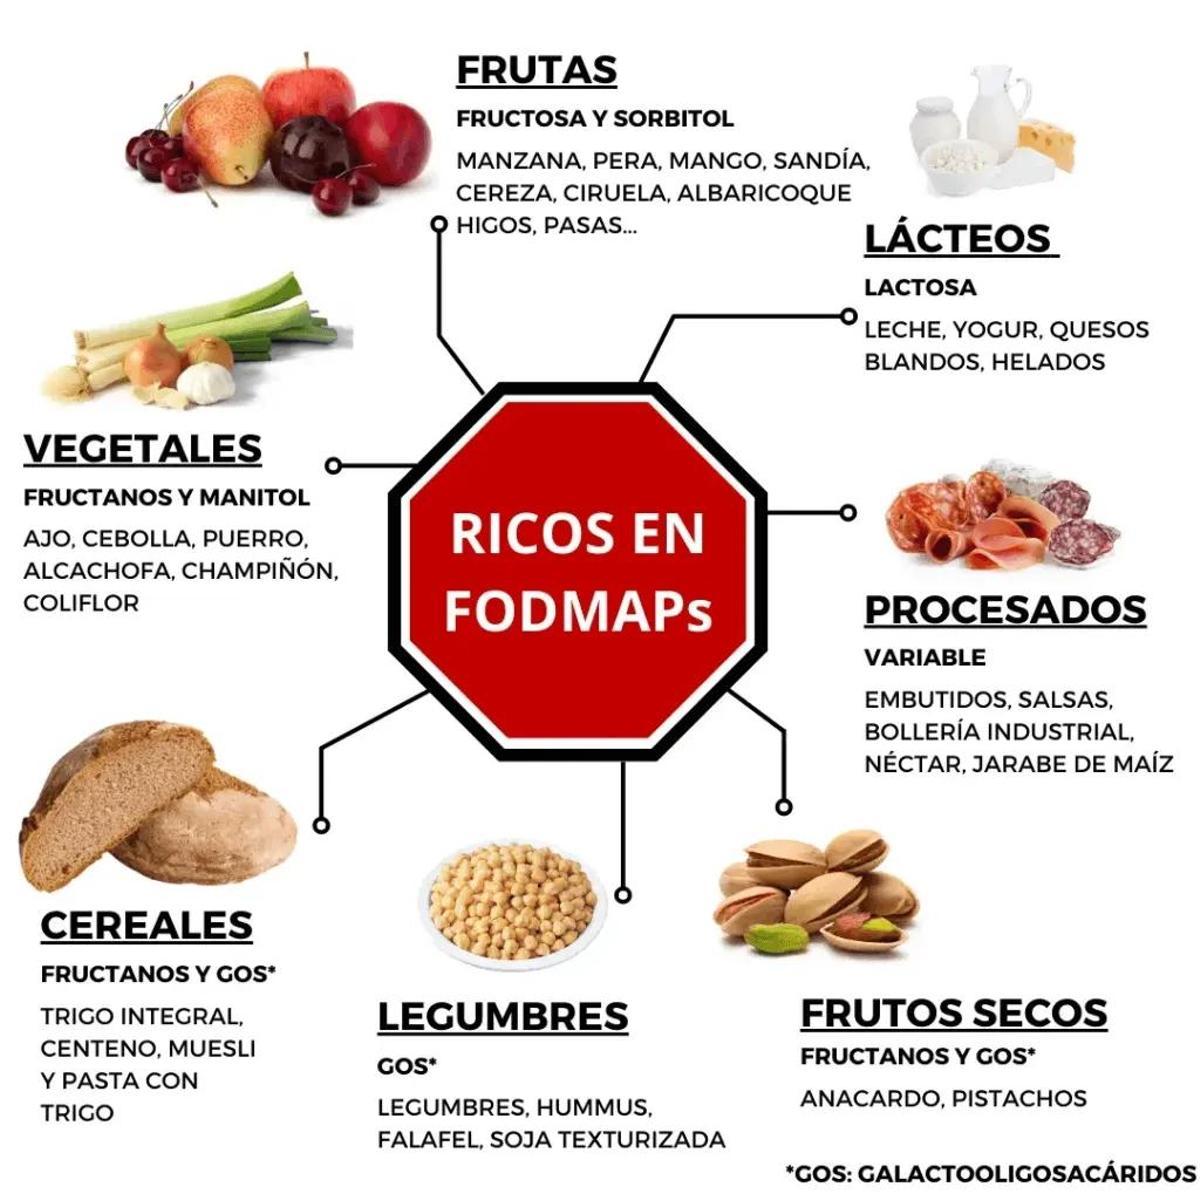 La dieta FODMAP es una herramienta efectiva para aliviar problemas digestivos.